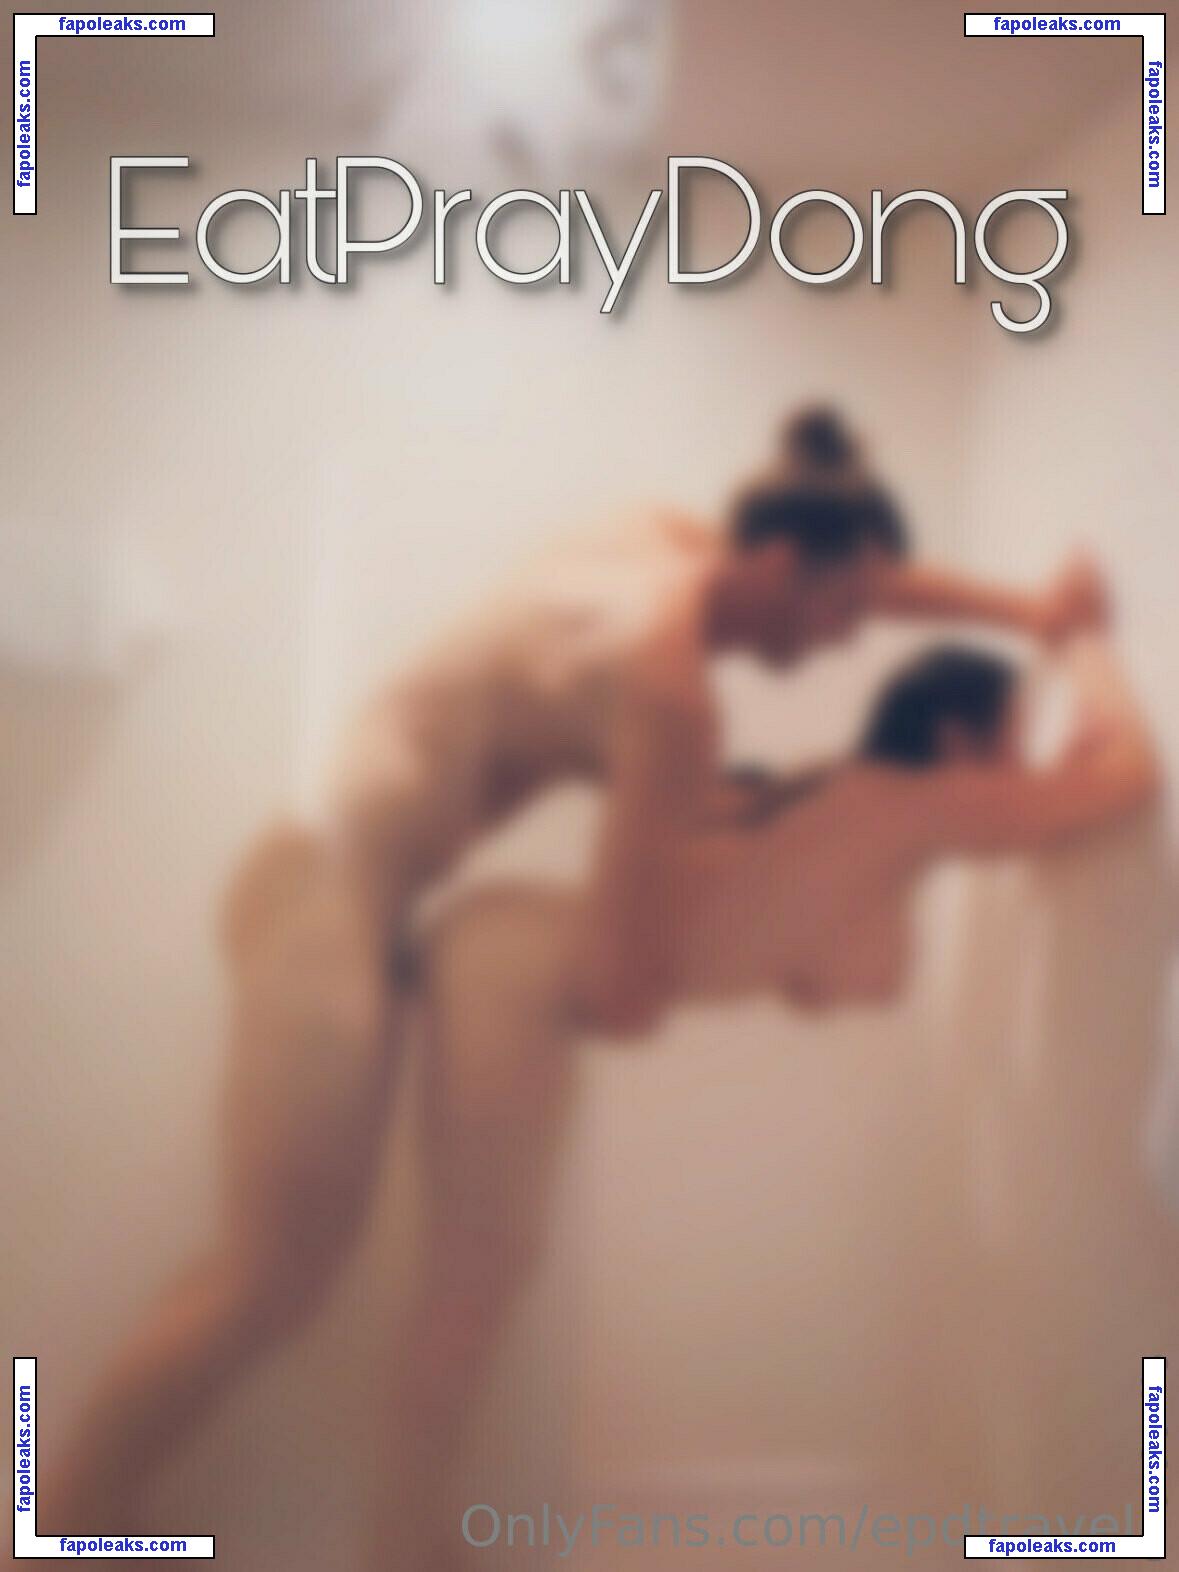 epdtravels / eatpraydong голая фото #0121 с Онлифанс